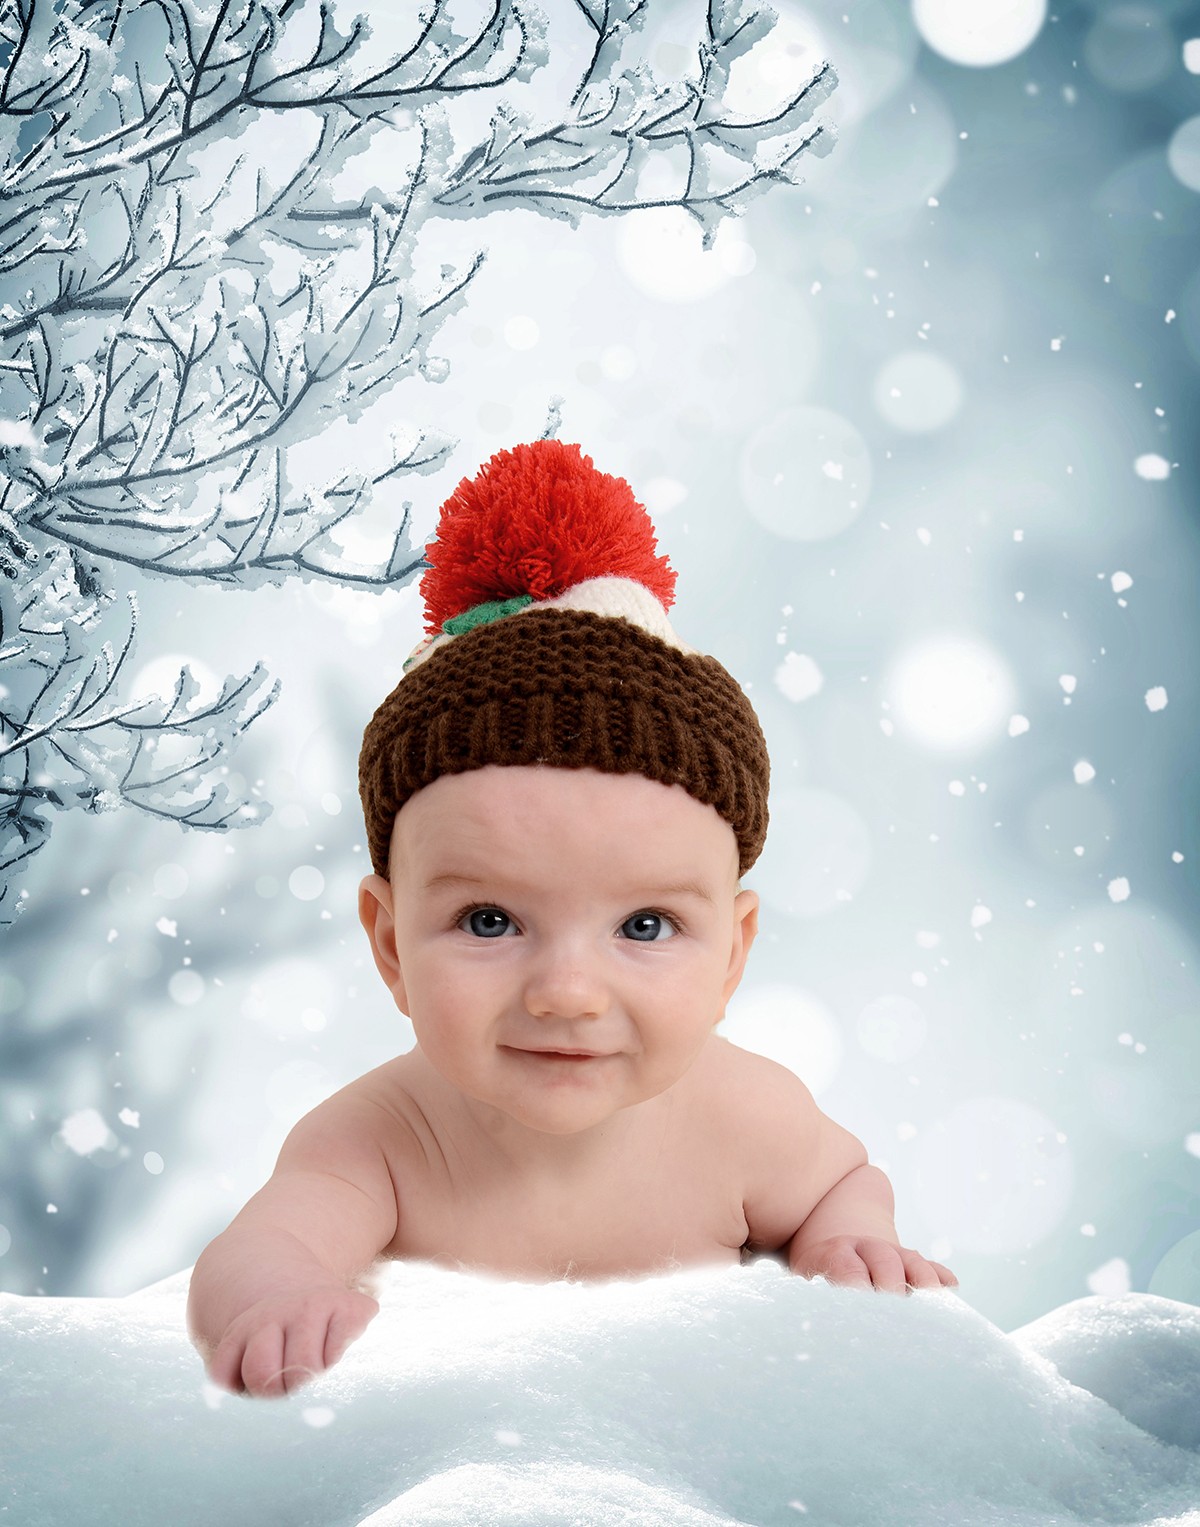 Christmas Mini Photo Shoots - digital backdrops, Christmas